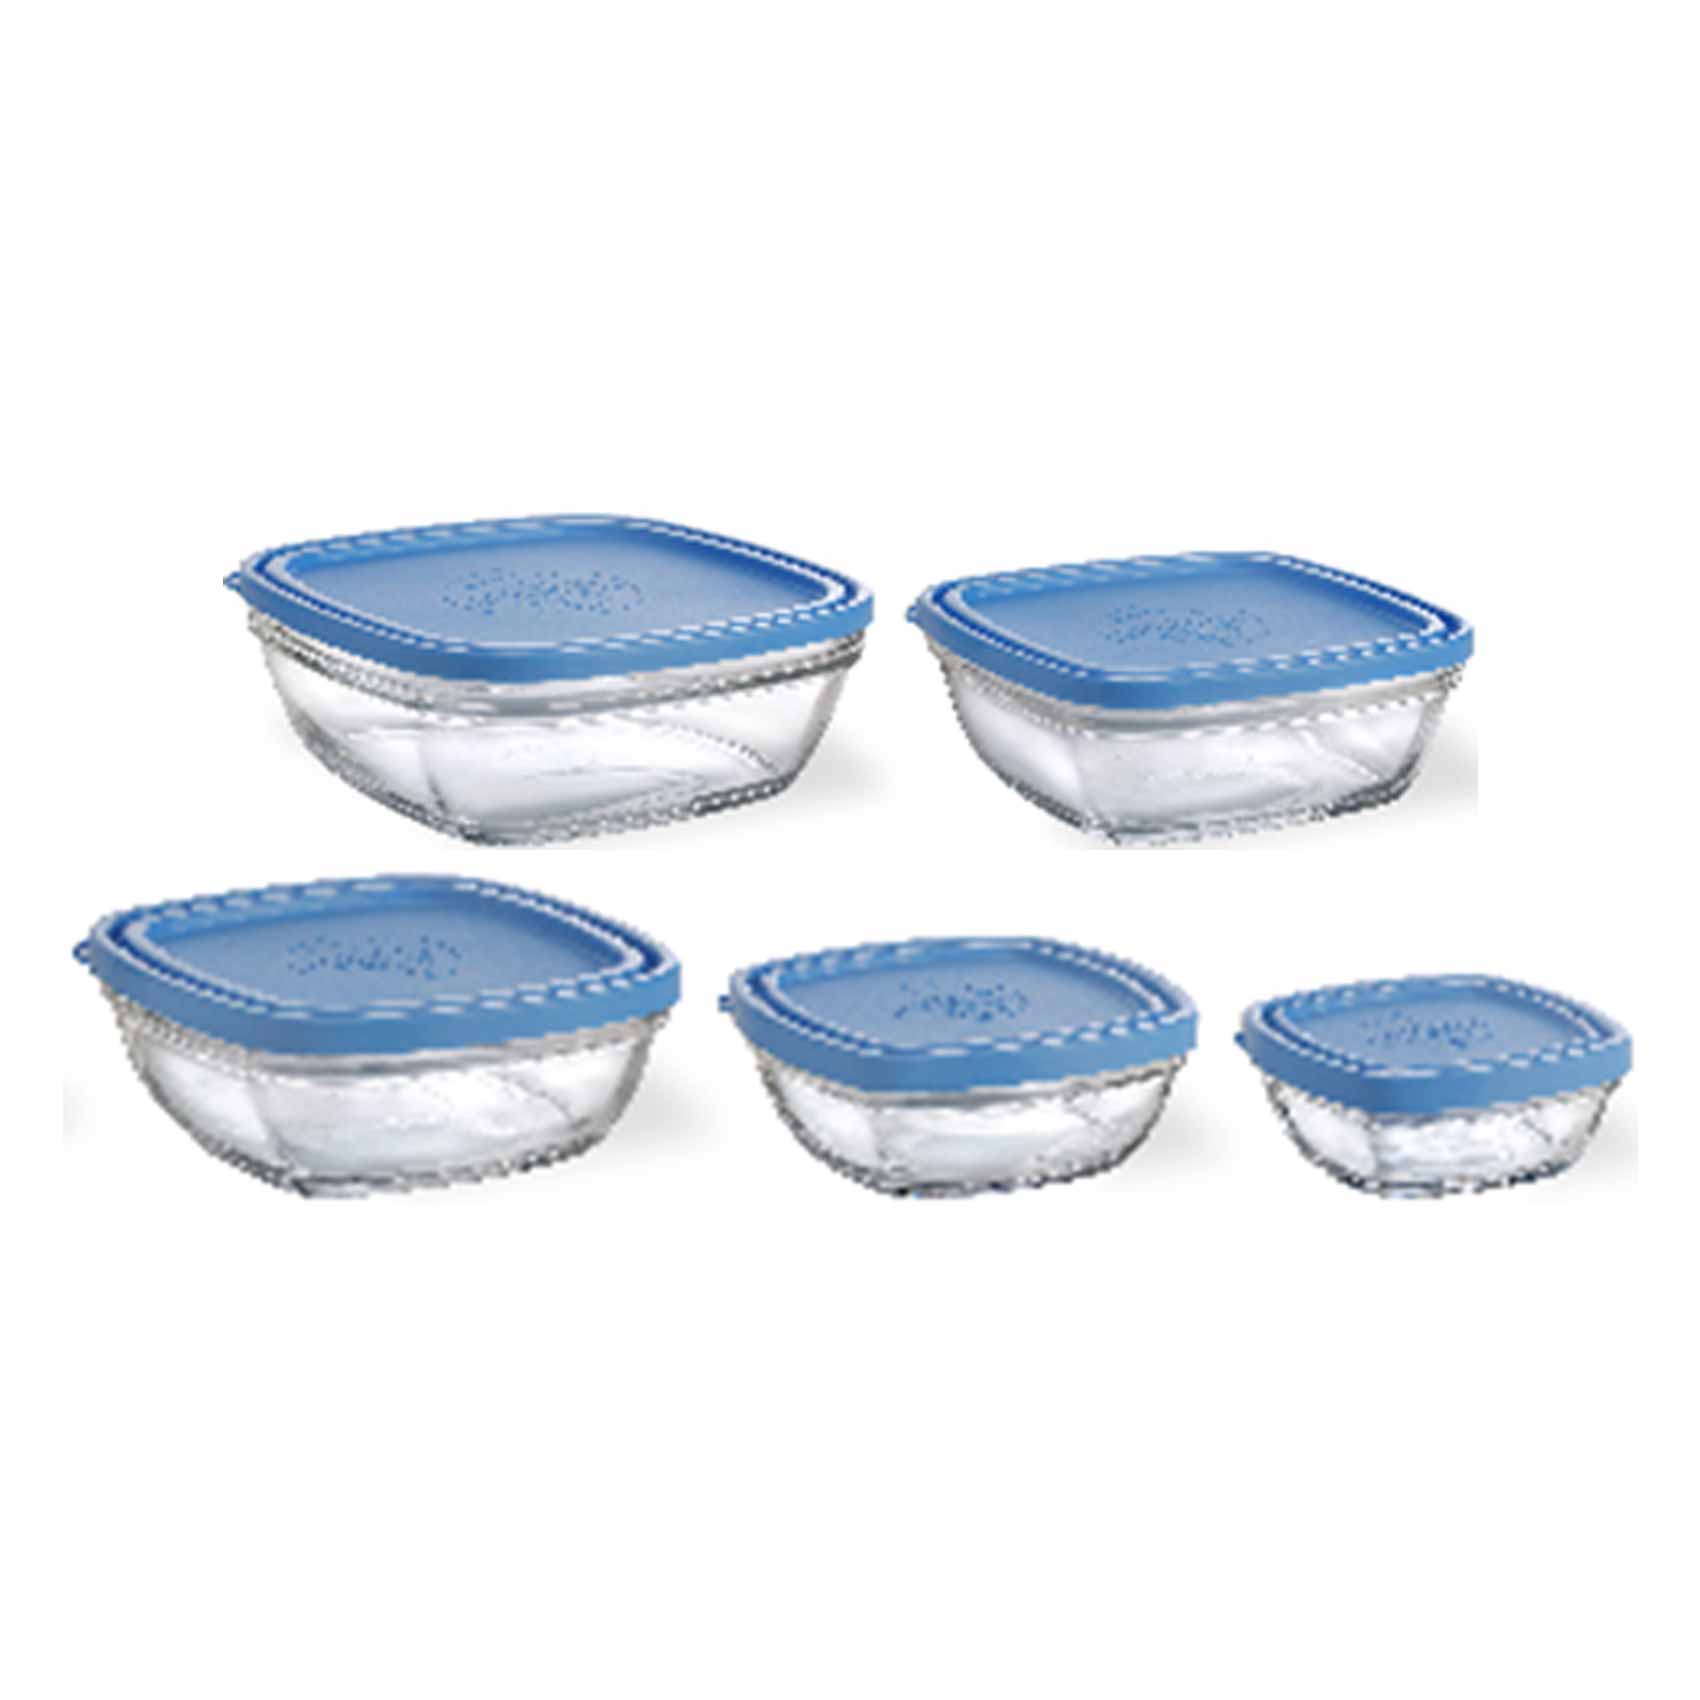 Duralex Square Bowls With Blue 5 Pieces